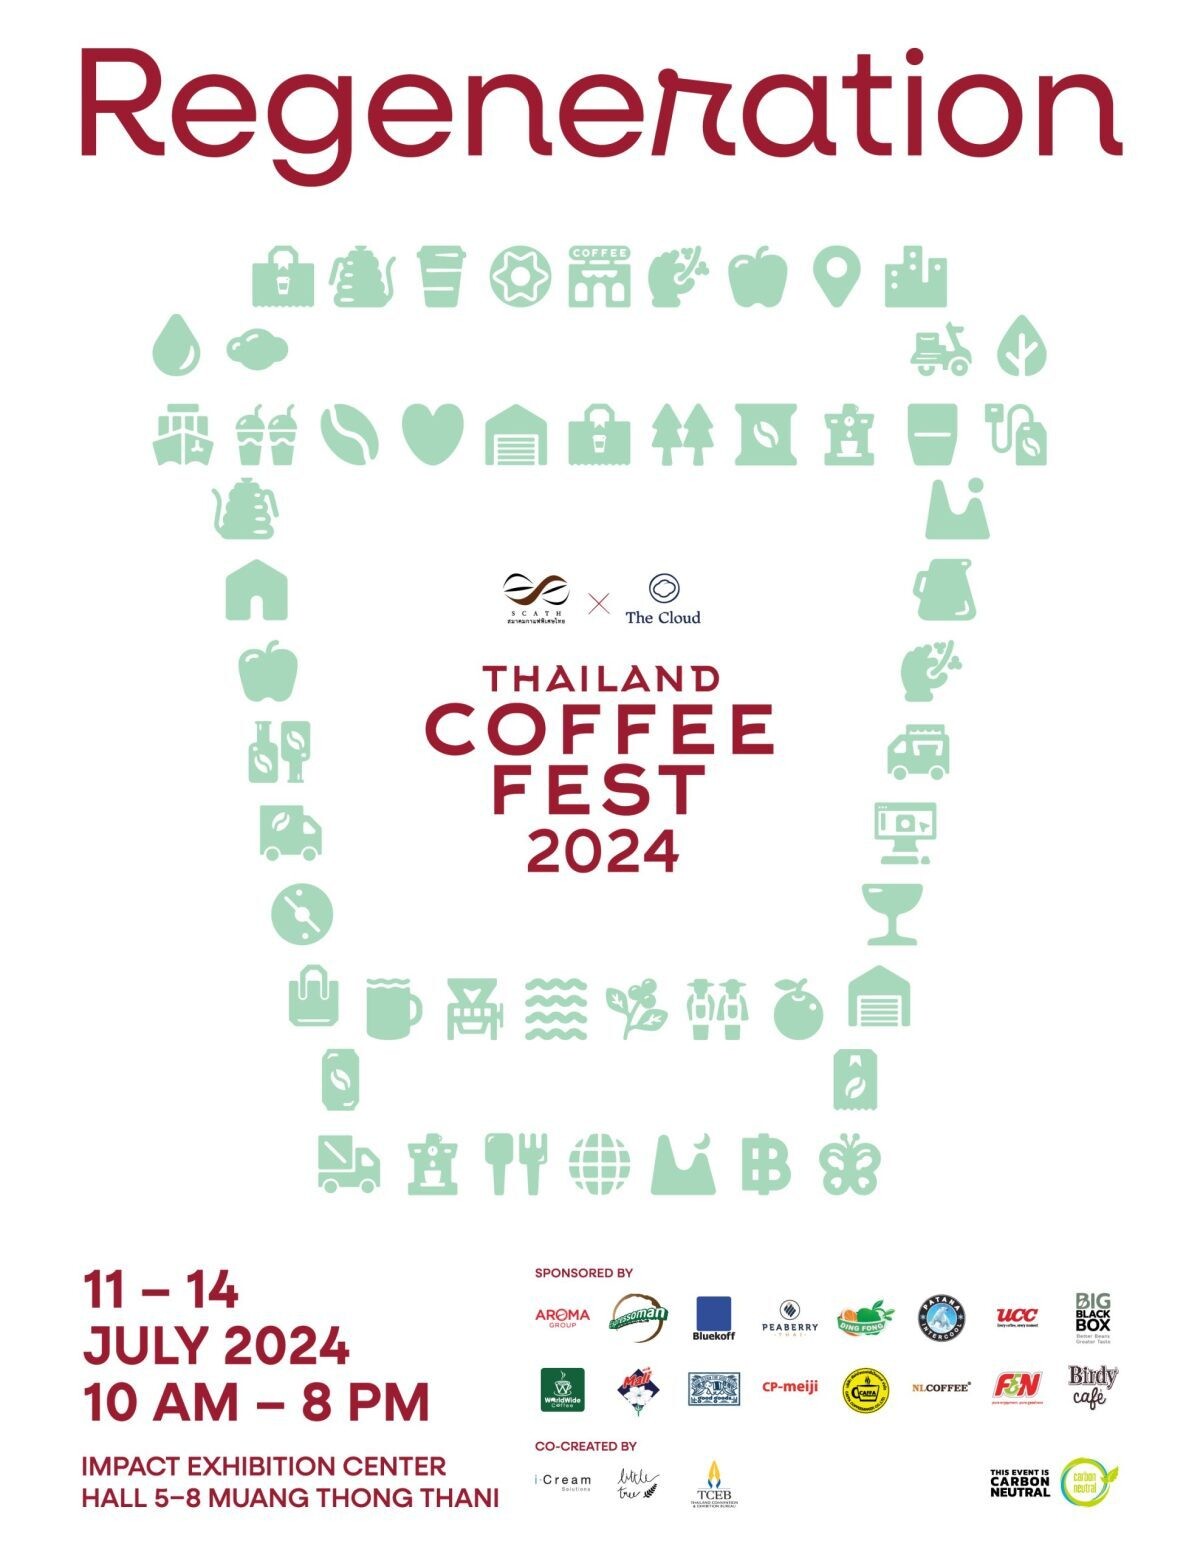 Thailand Coffee Fest 2024 เทศกาลของคนรักกาแฟที่ทุกคนรอคอย ชวนสัมผัสกลิ่นหอมกรุ่นของกาแฟพิเศษไทย ที่เชื่อมโยงธรรมชาติ-กาแฟ-ผู้คน เข้าด้วยกัน เริ่ม 11 - 14 ก.ค.นี้ ที่อิมแพ็ค เอ็กซิบิชั่น ฮอลล์ 5 - 8 เมืองทองธานี